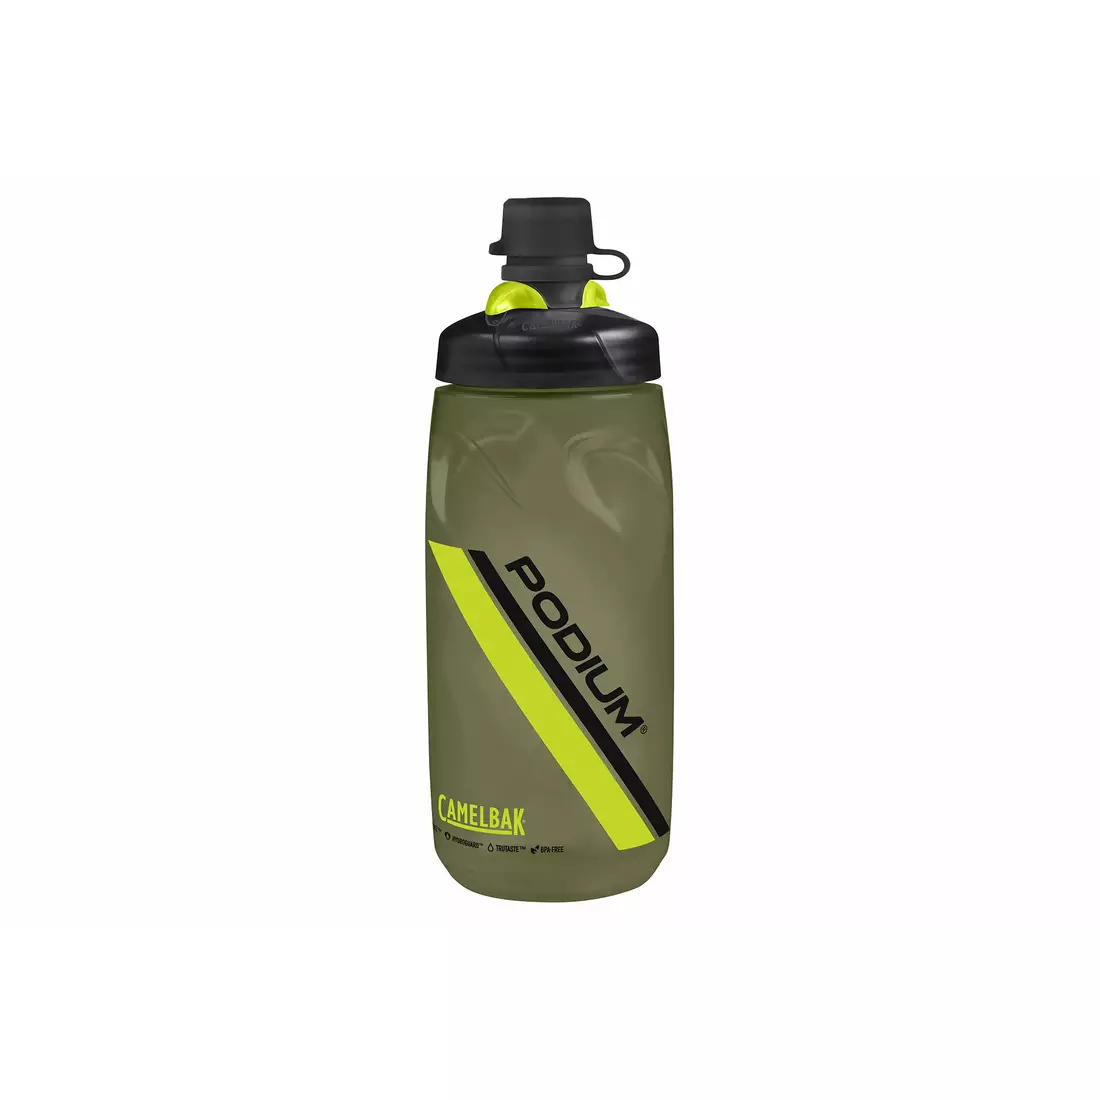 Camelbak SS18 Dirt Series Podium Bike Water Bottle 21oz / 620ml Olive